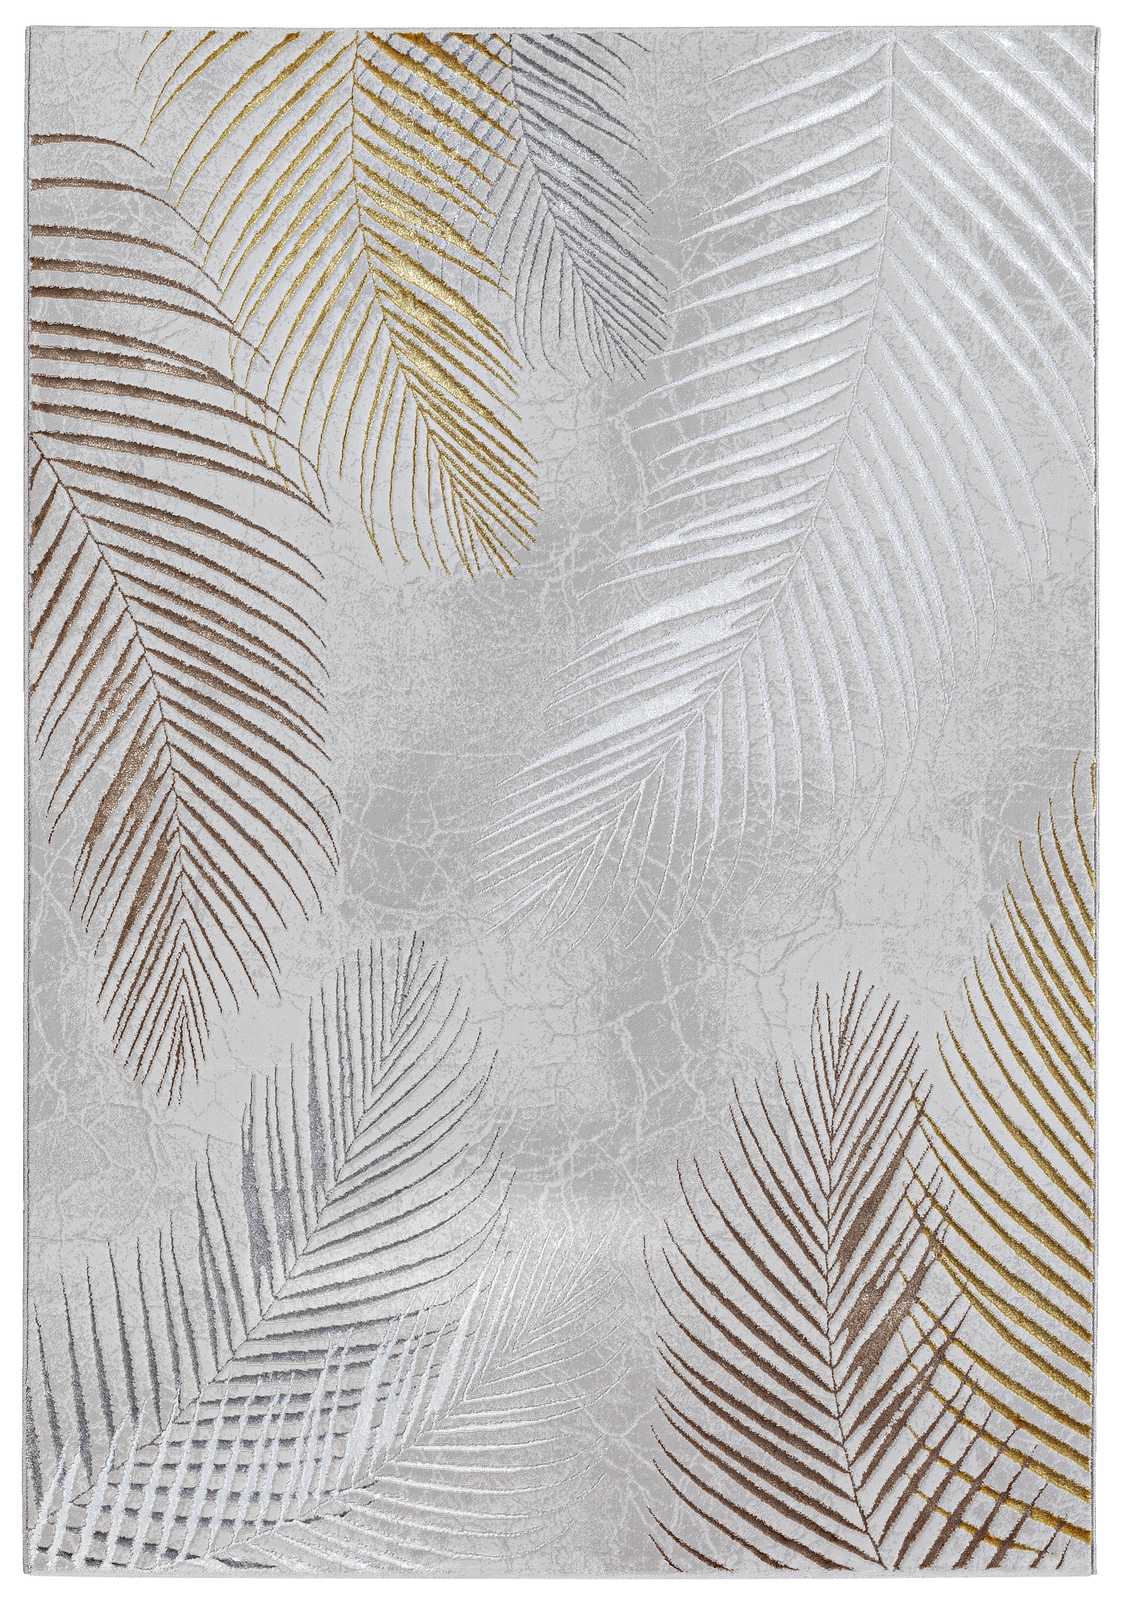             Knuffelzacht hoogpolig tapijt in grijs als loper - 340 x 240 cm
        